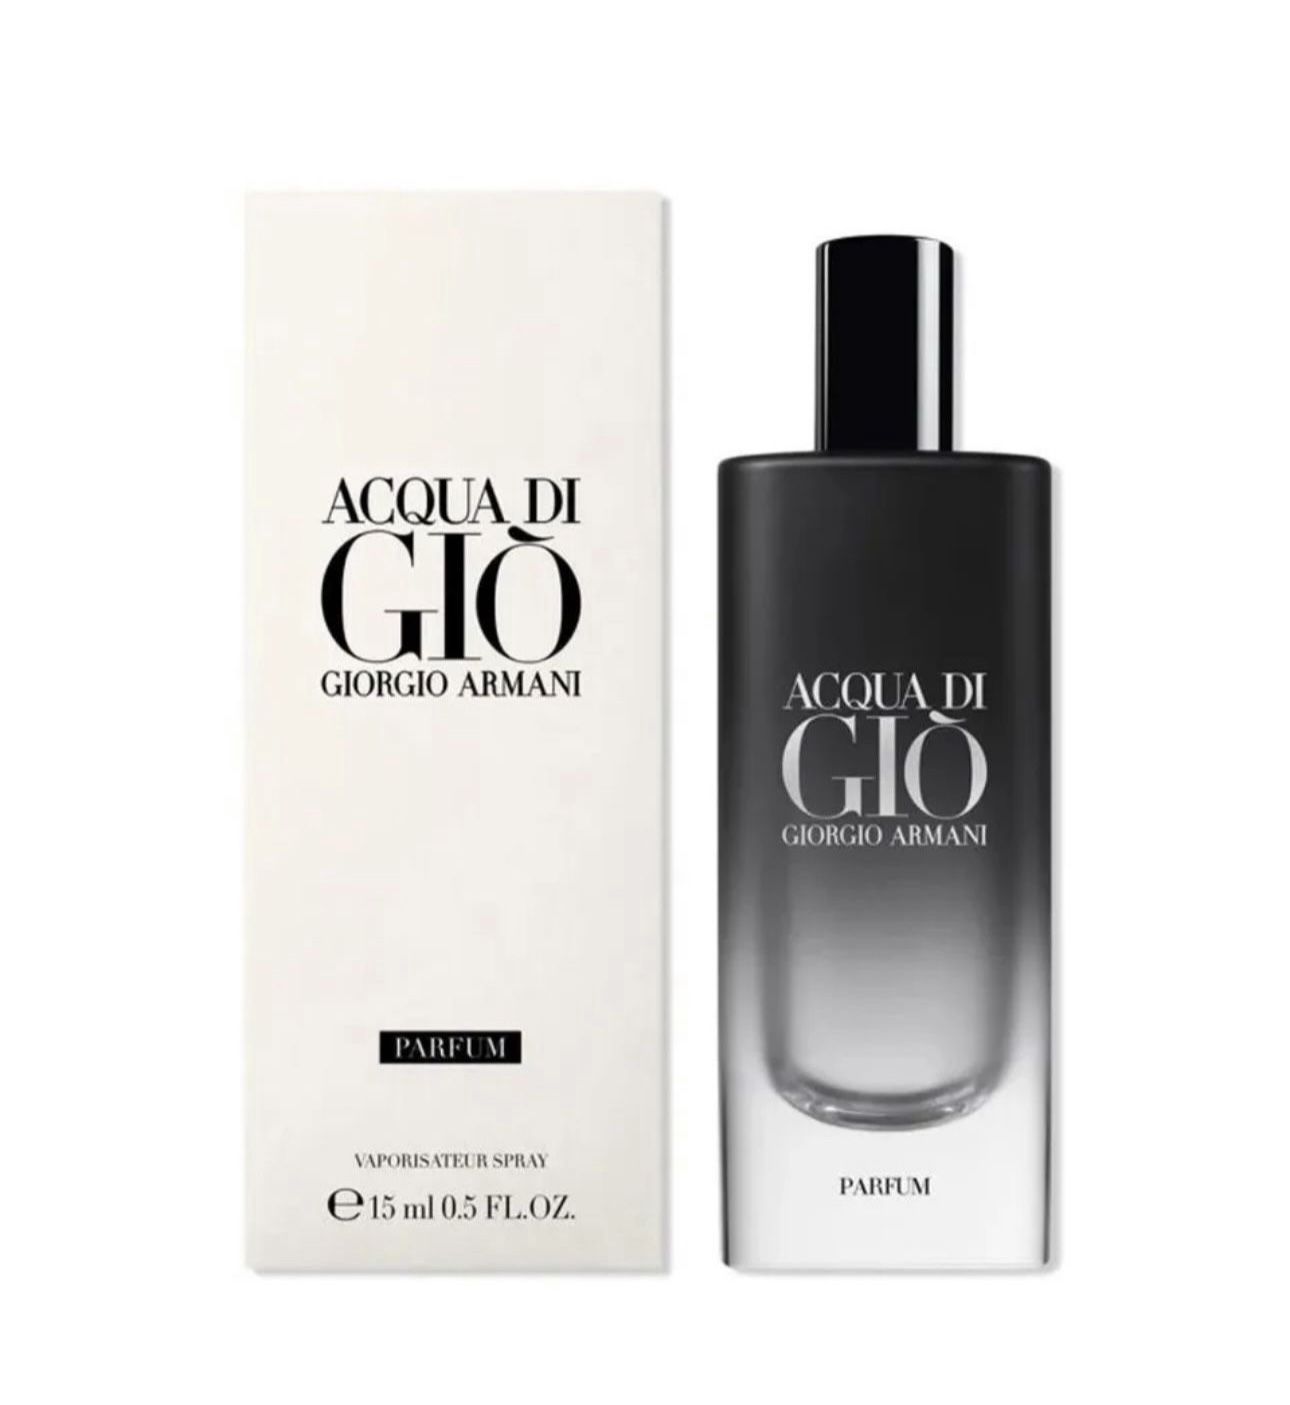 Sealed New ACQUA di GIO - Spray Parfum - Giorgio Armani Mini for Men - 15 mL (.5 fl oz)